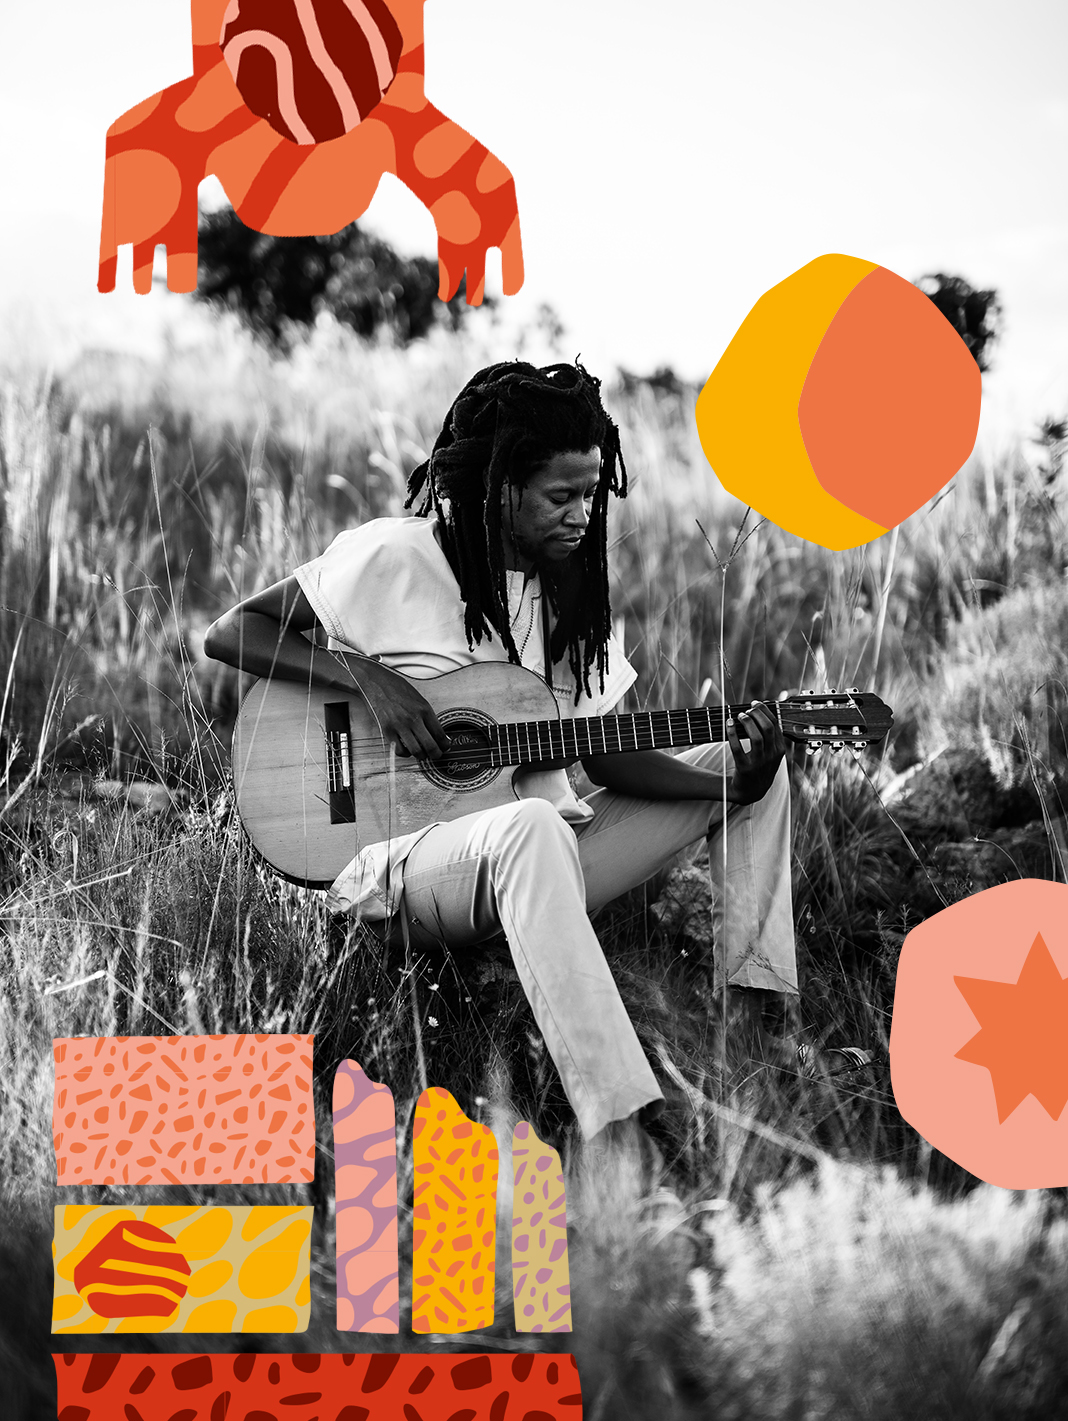 Introducing: acoustic guitar visionary & urban mythologist Sibusile Xaba